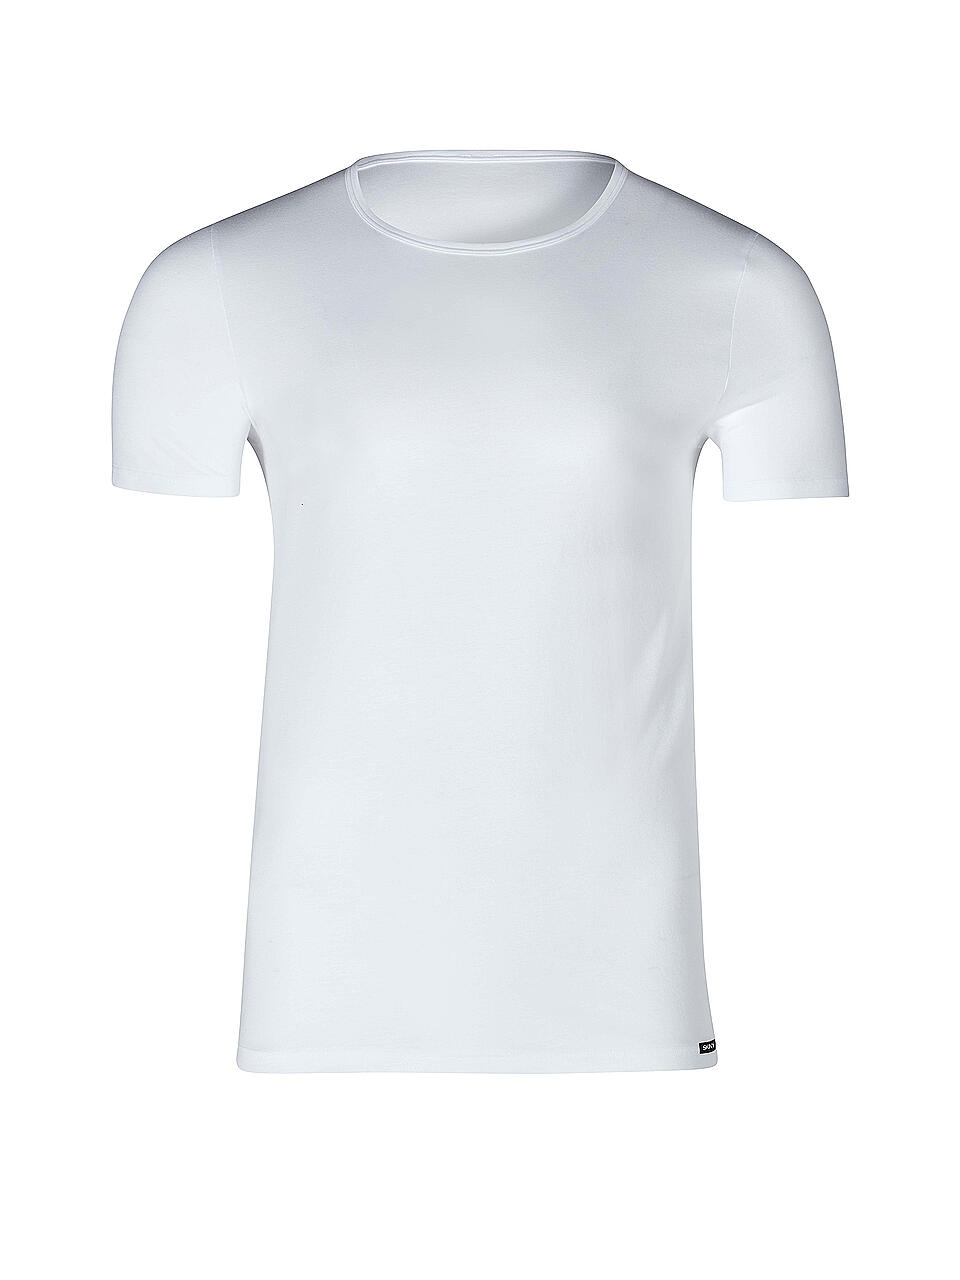 SKINY | T-Shirt 2-er Pkg. (Weiss) | weiß